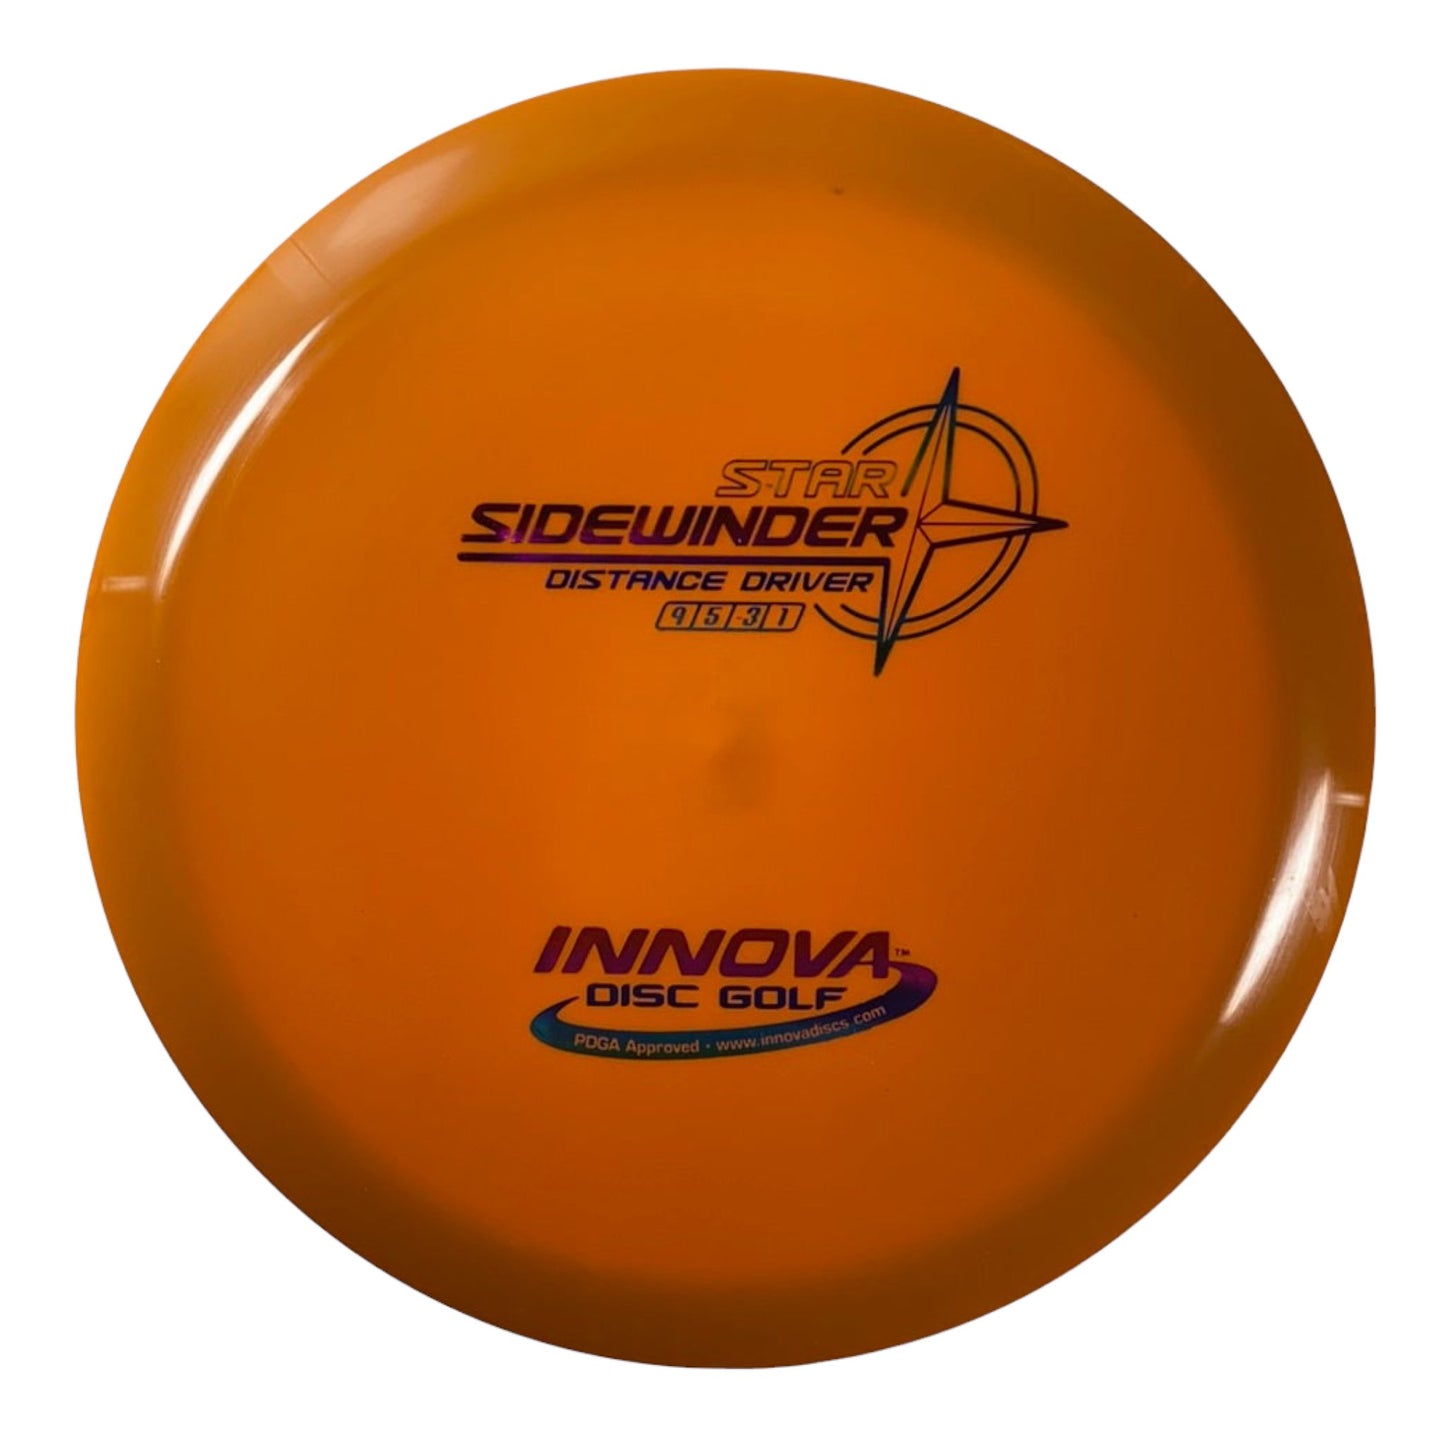 Innova Champion Discs Sidewinder | Star | Orange/Rainbow 174g Disc Golf